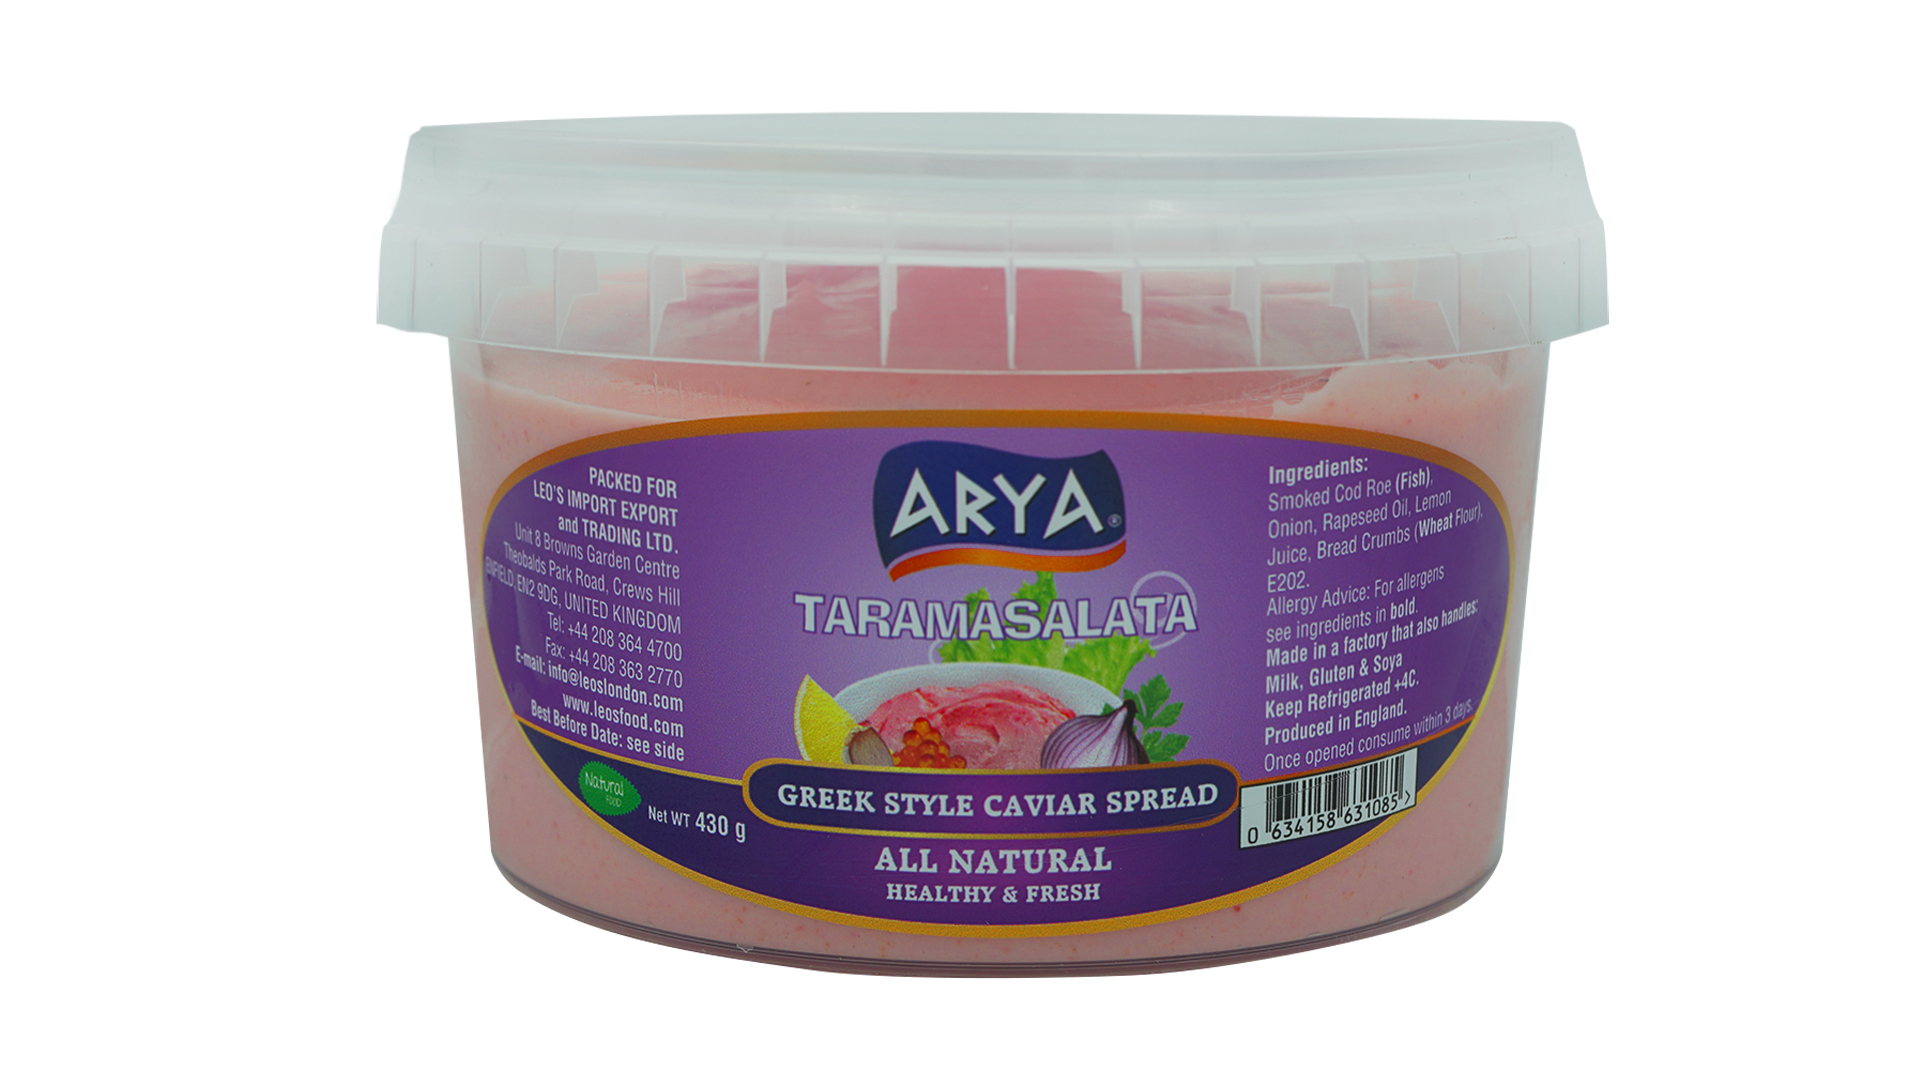 Arya taramasalata greek style caviar spread 430g 2